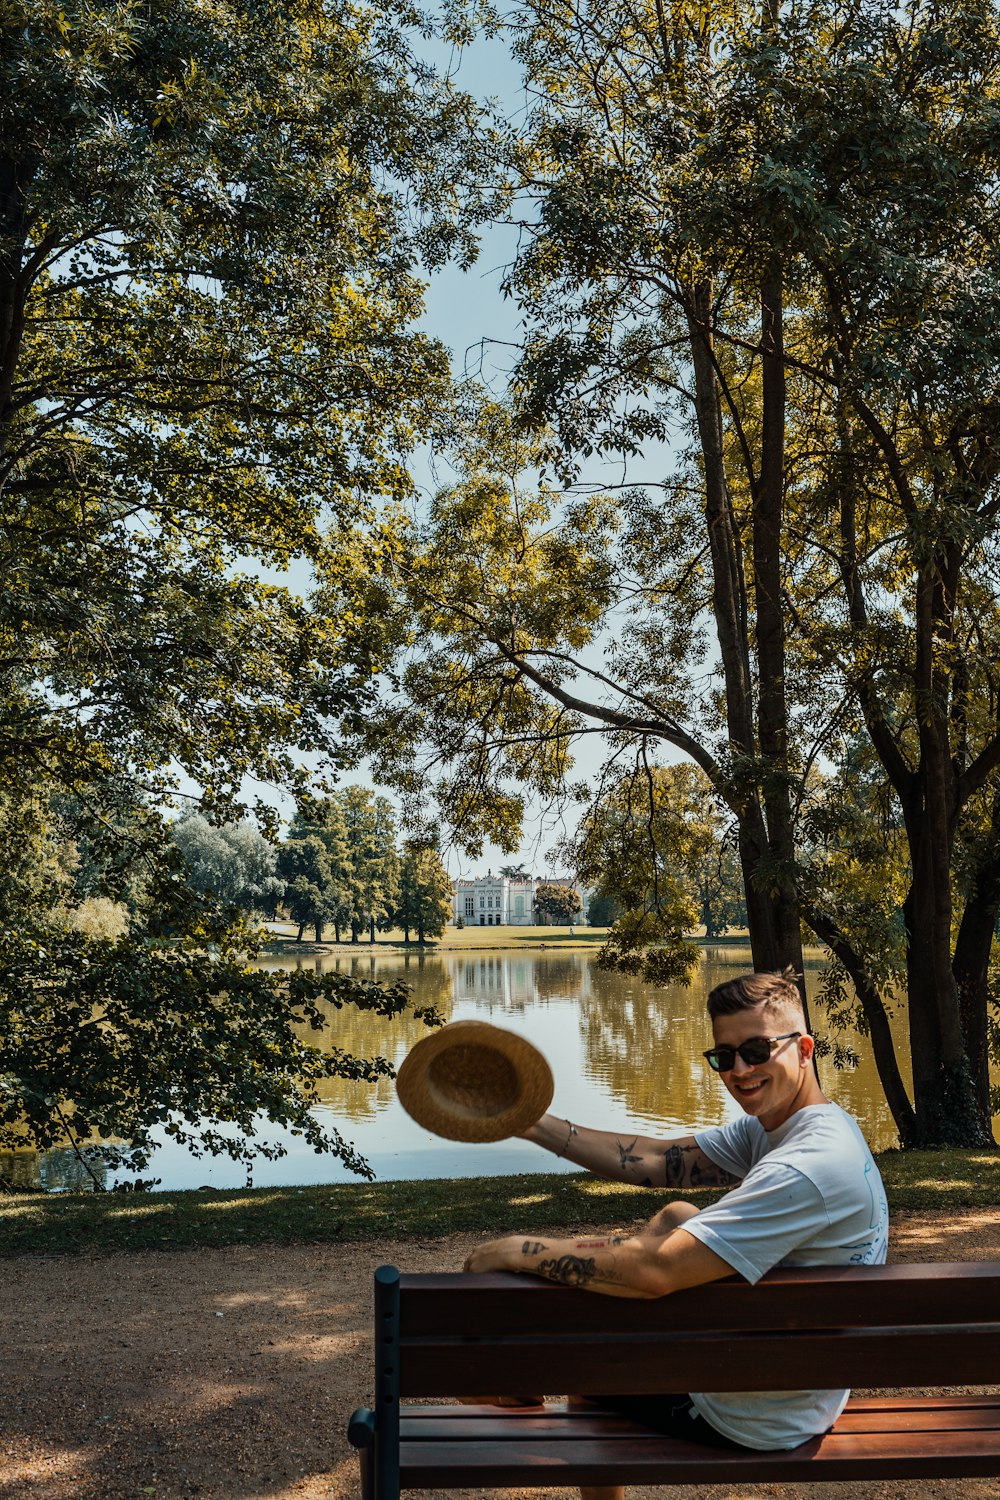 Un uomo seduto su una panchina con un frisbee in mano